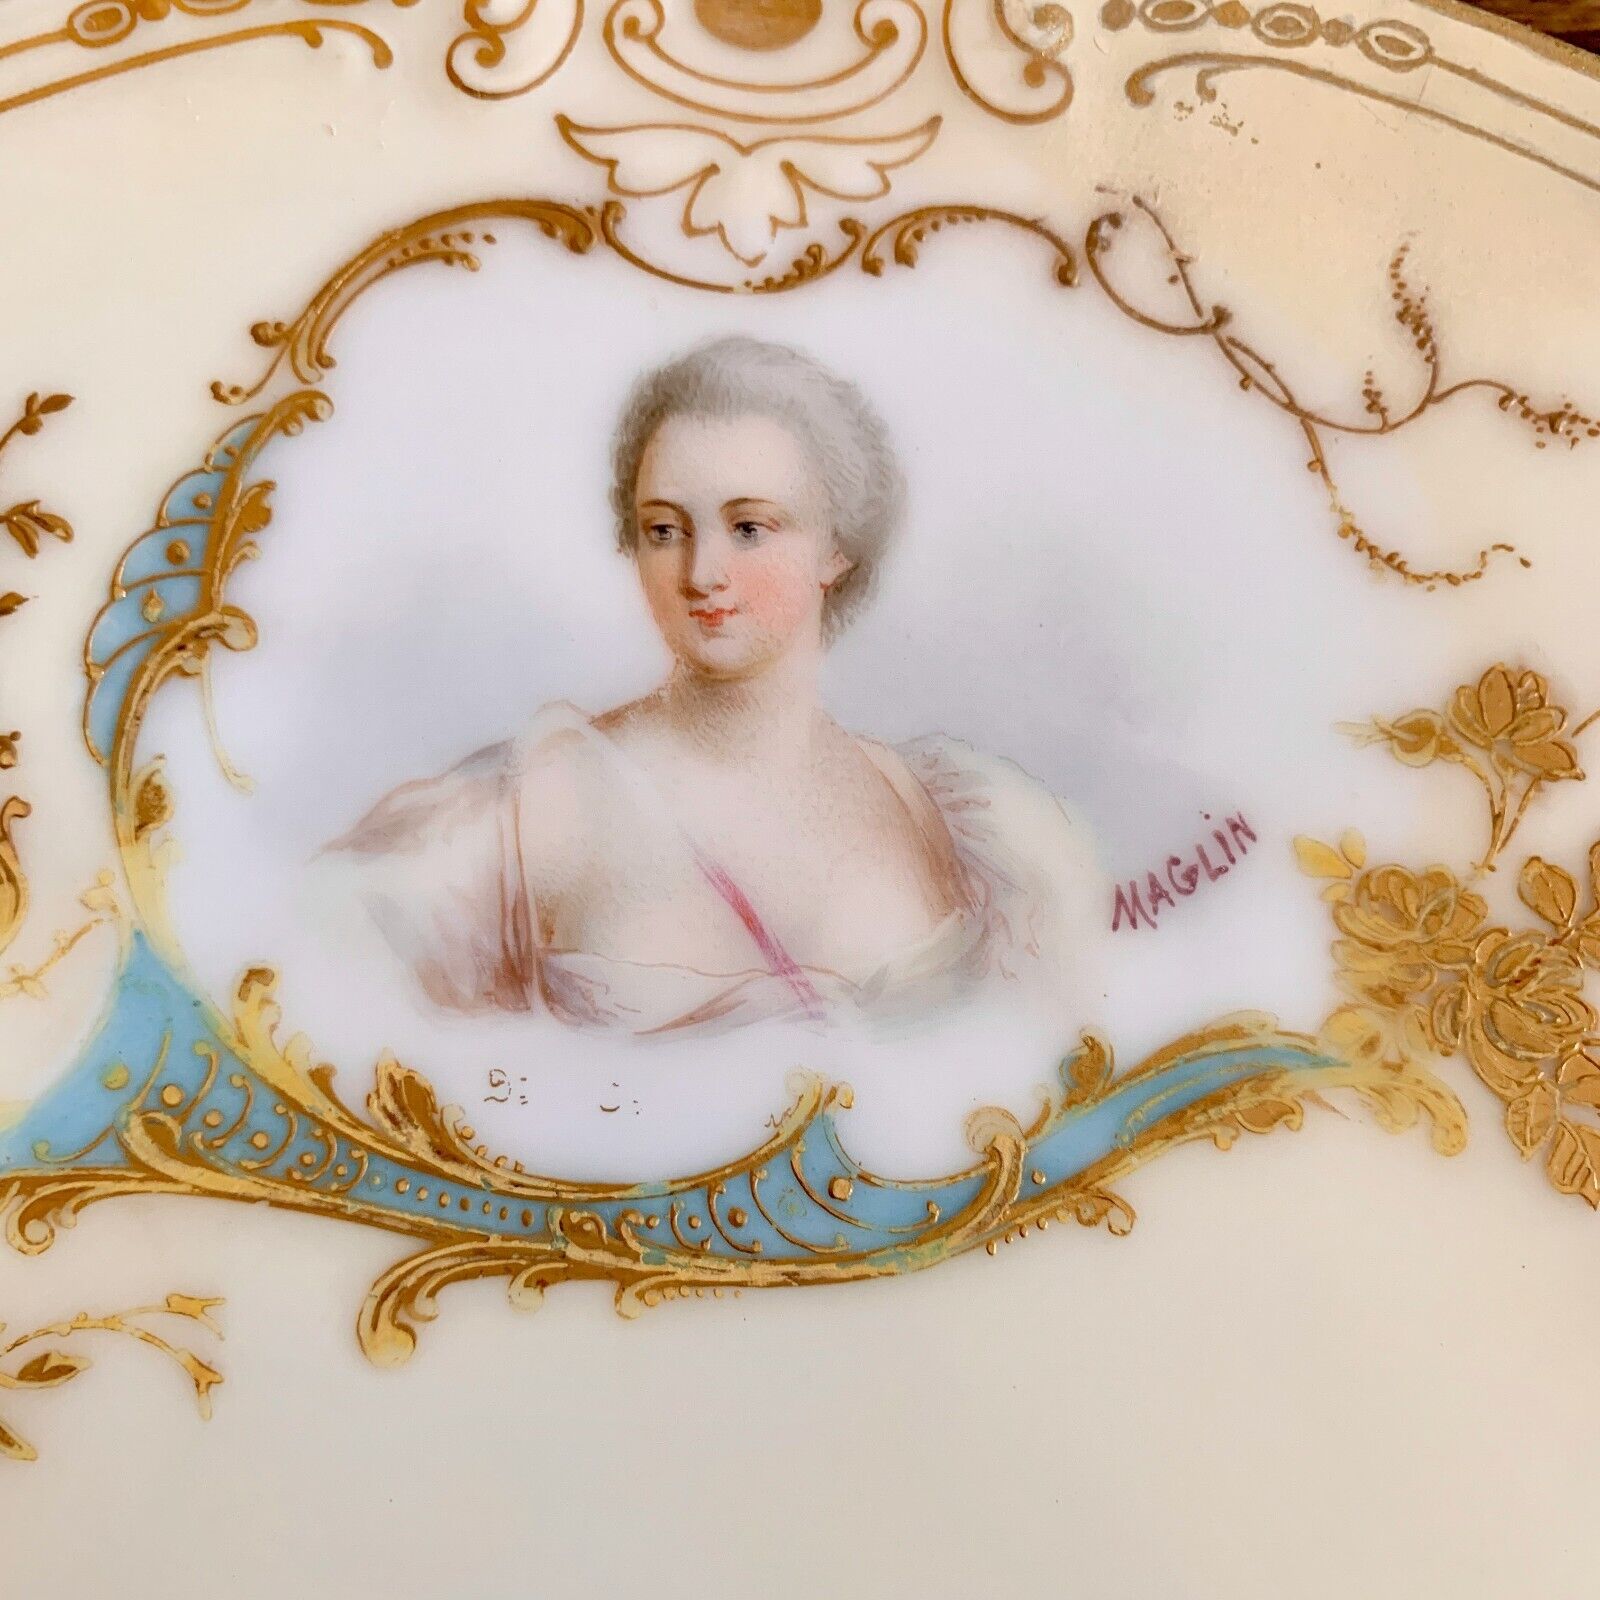 Antique Sevres Style Portrait Plate Duchesse de Chateauroux Signed Maglin